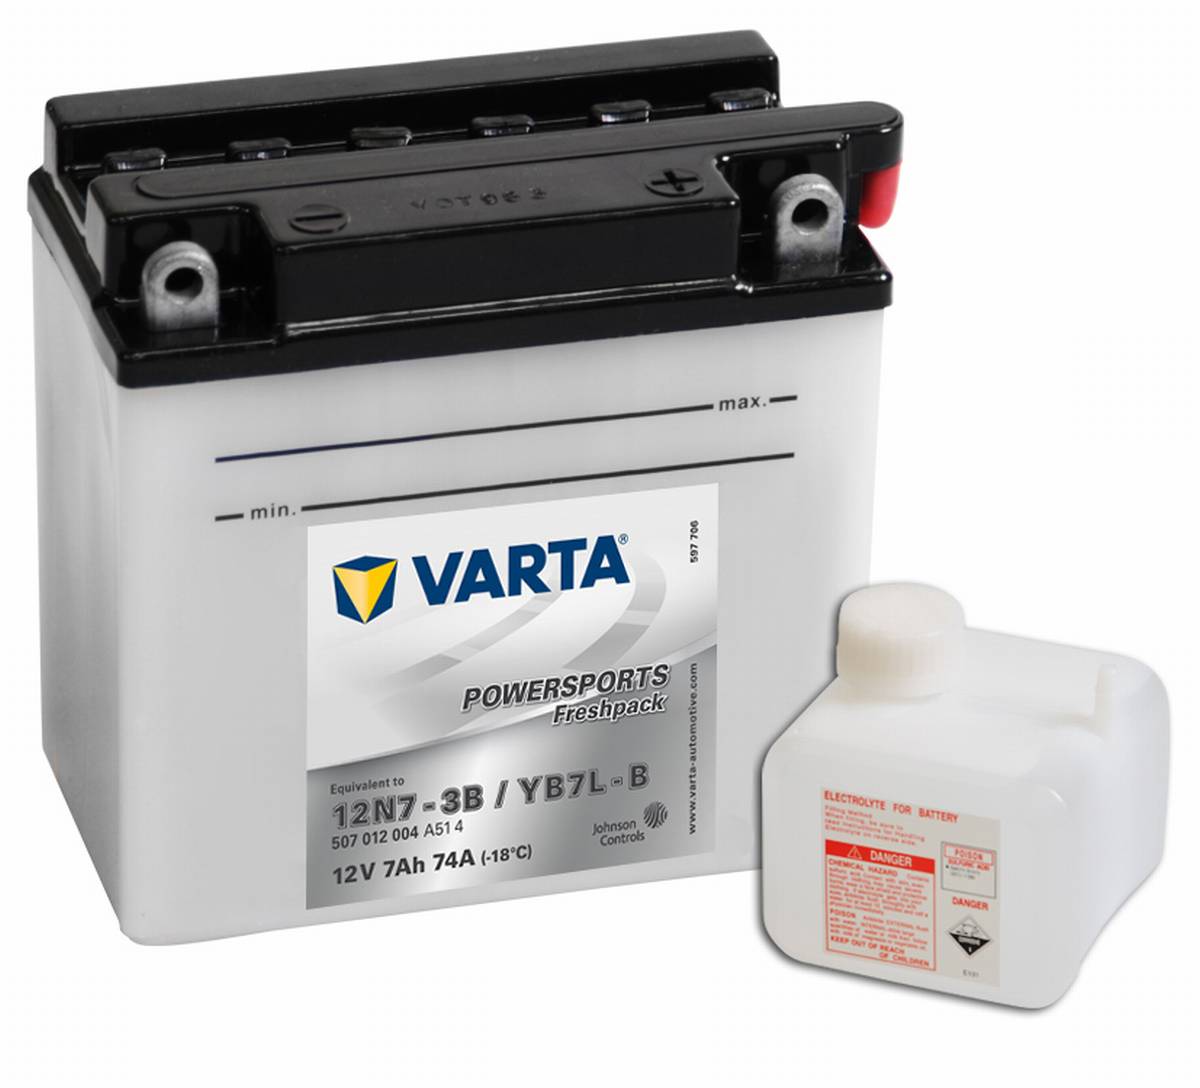 Varta Powersports Freshpack 12N7-3B Motorrad Batterie YB7L-B 507012004 12V  7Ah 74A, Starterbatterie, Motorrad, Kfz, Batterien für